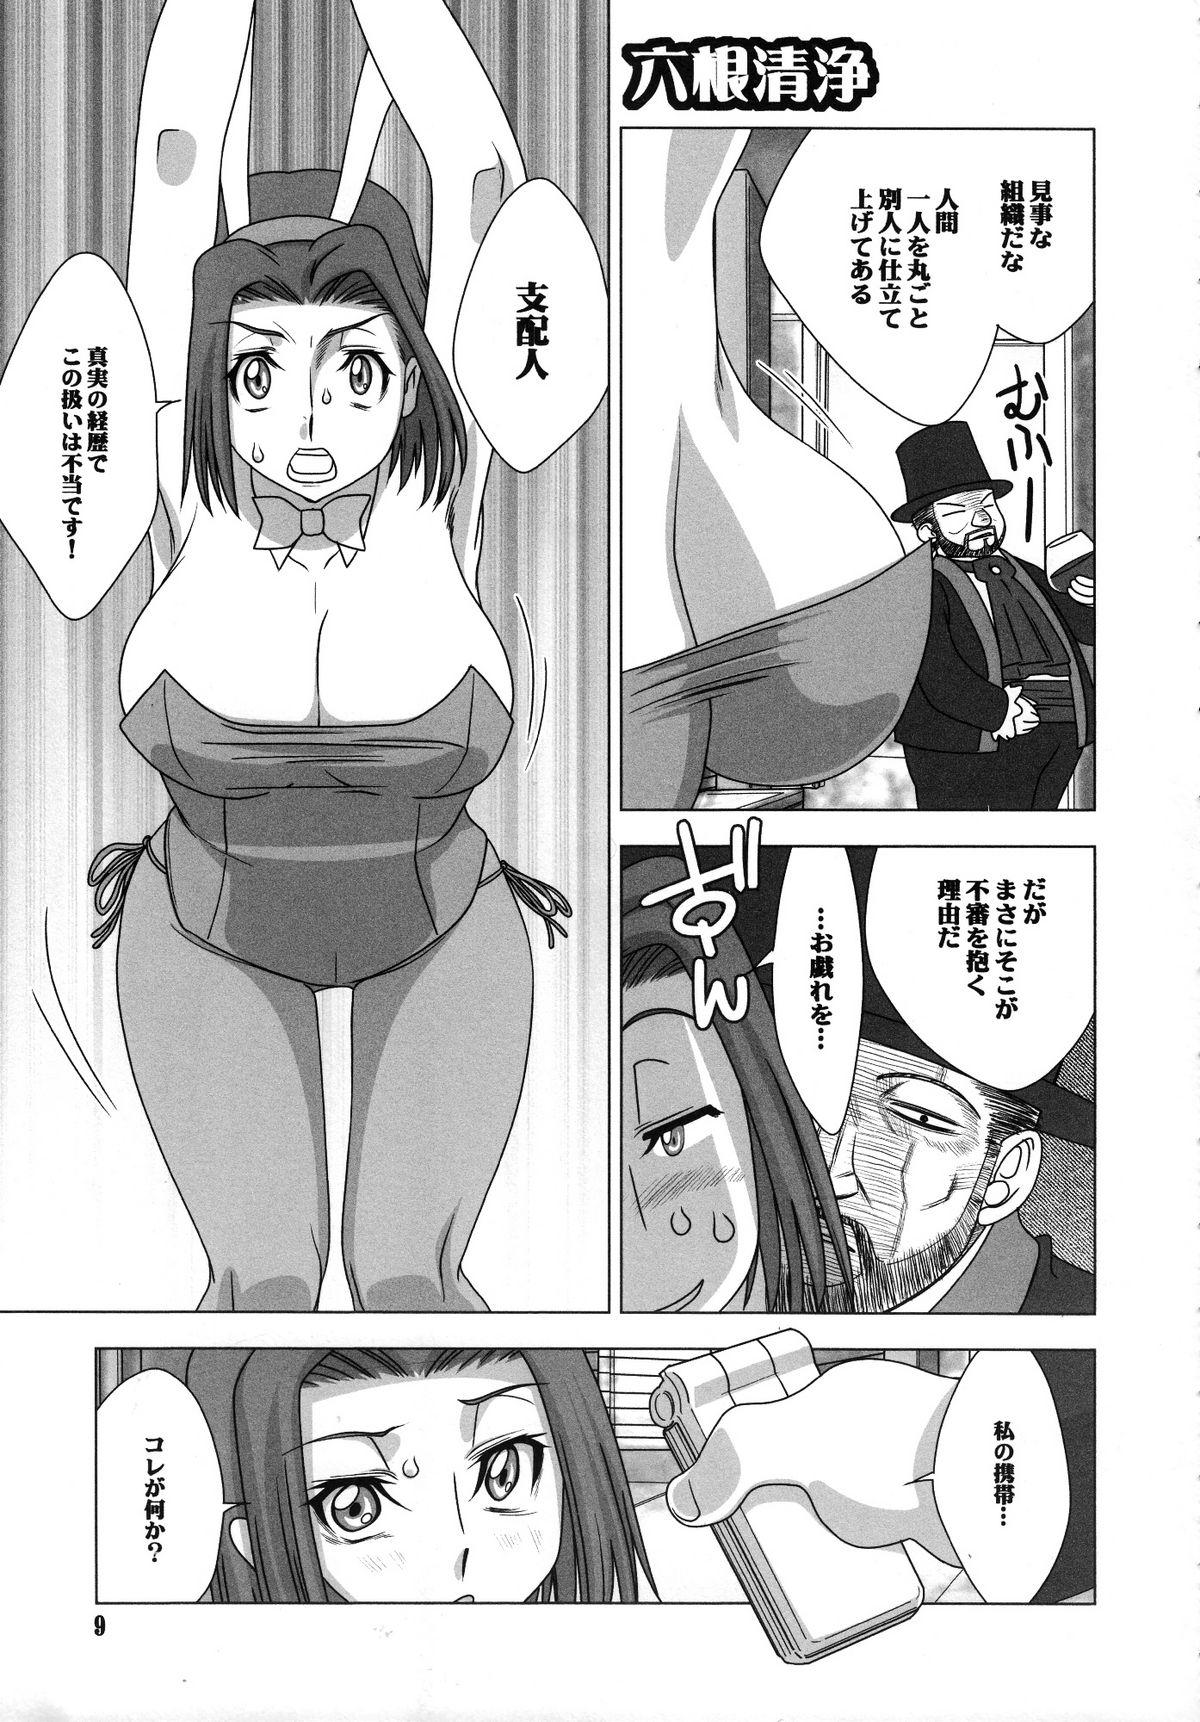 X Shitasakisanzun 3 - Code geass Naked Women Fucking - Page 10